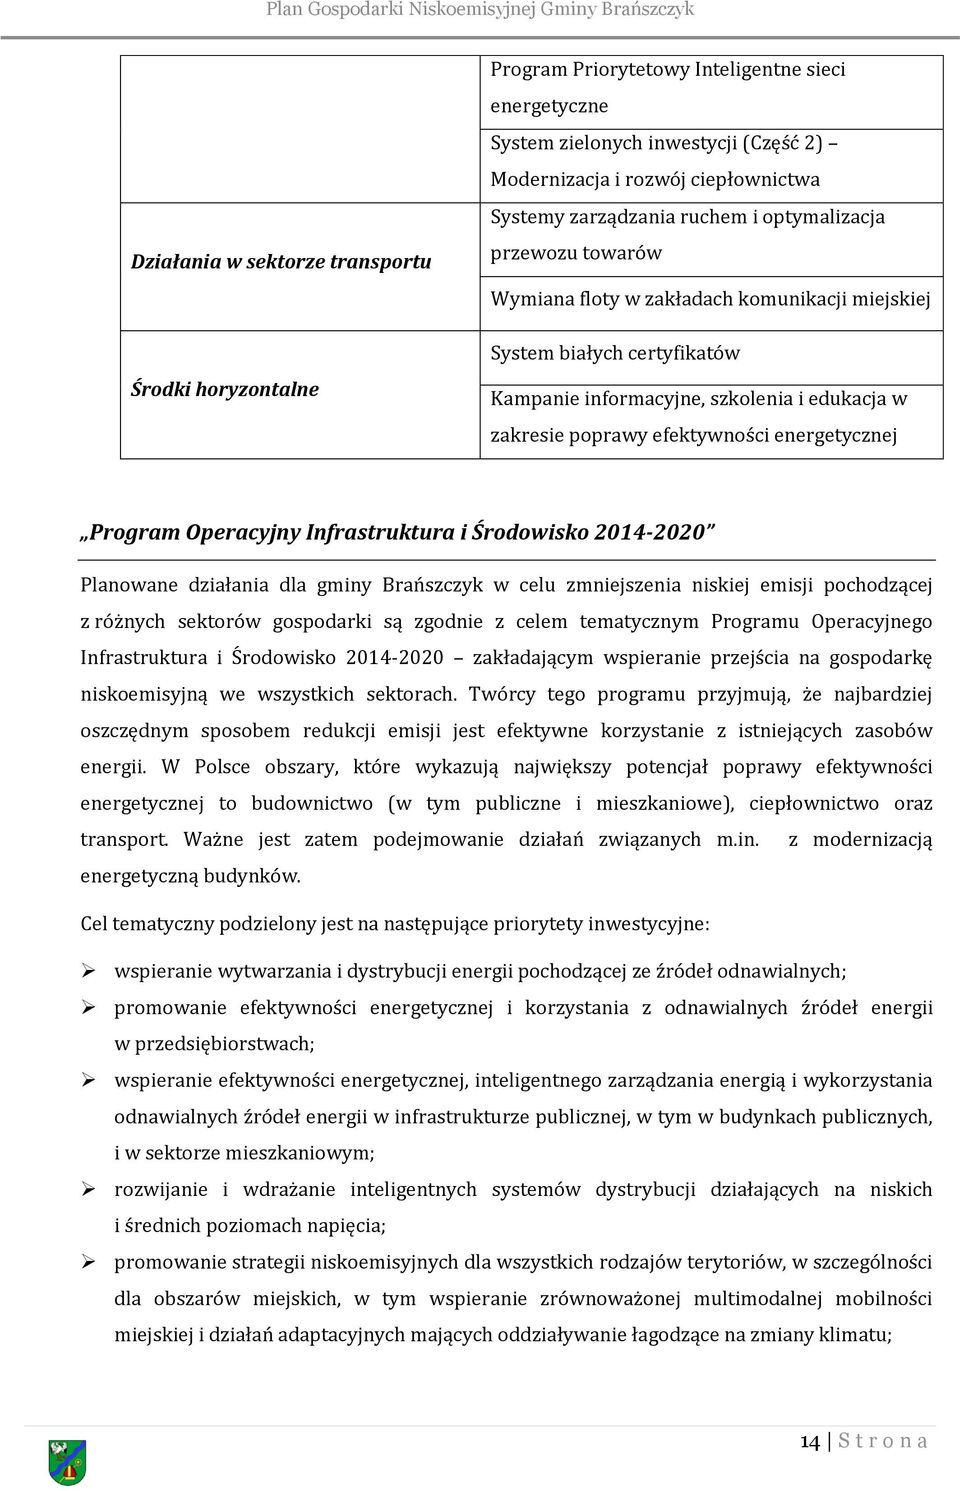 energetycznej Program Operacyjny Infrastruktura i Środowisko 2014-2020 Planowane działania dla gminy Brańszczyk w celu zmniejszenia niskiej emisji pochodzącej z różnych sektorów gospodarki są zgodnie